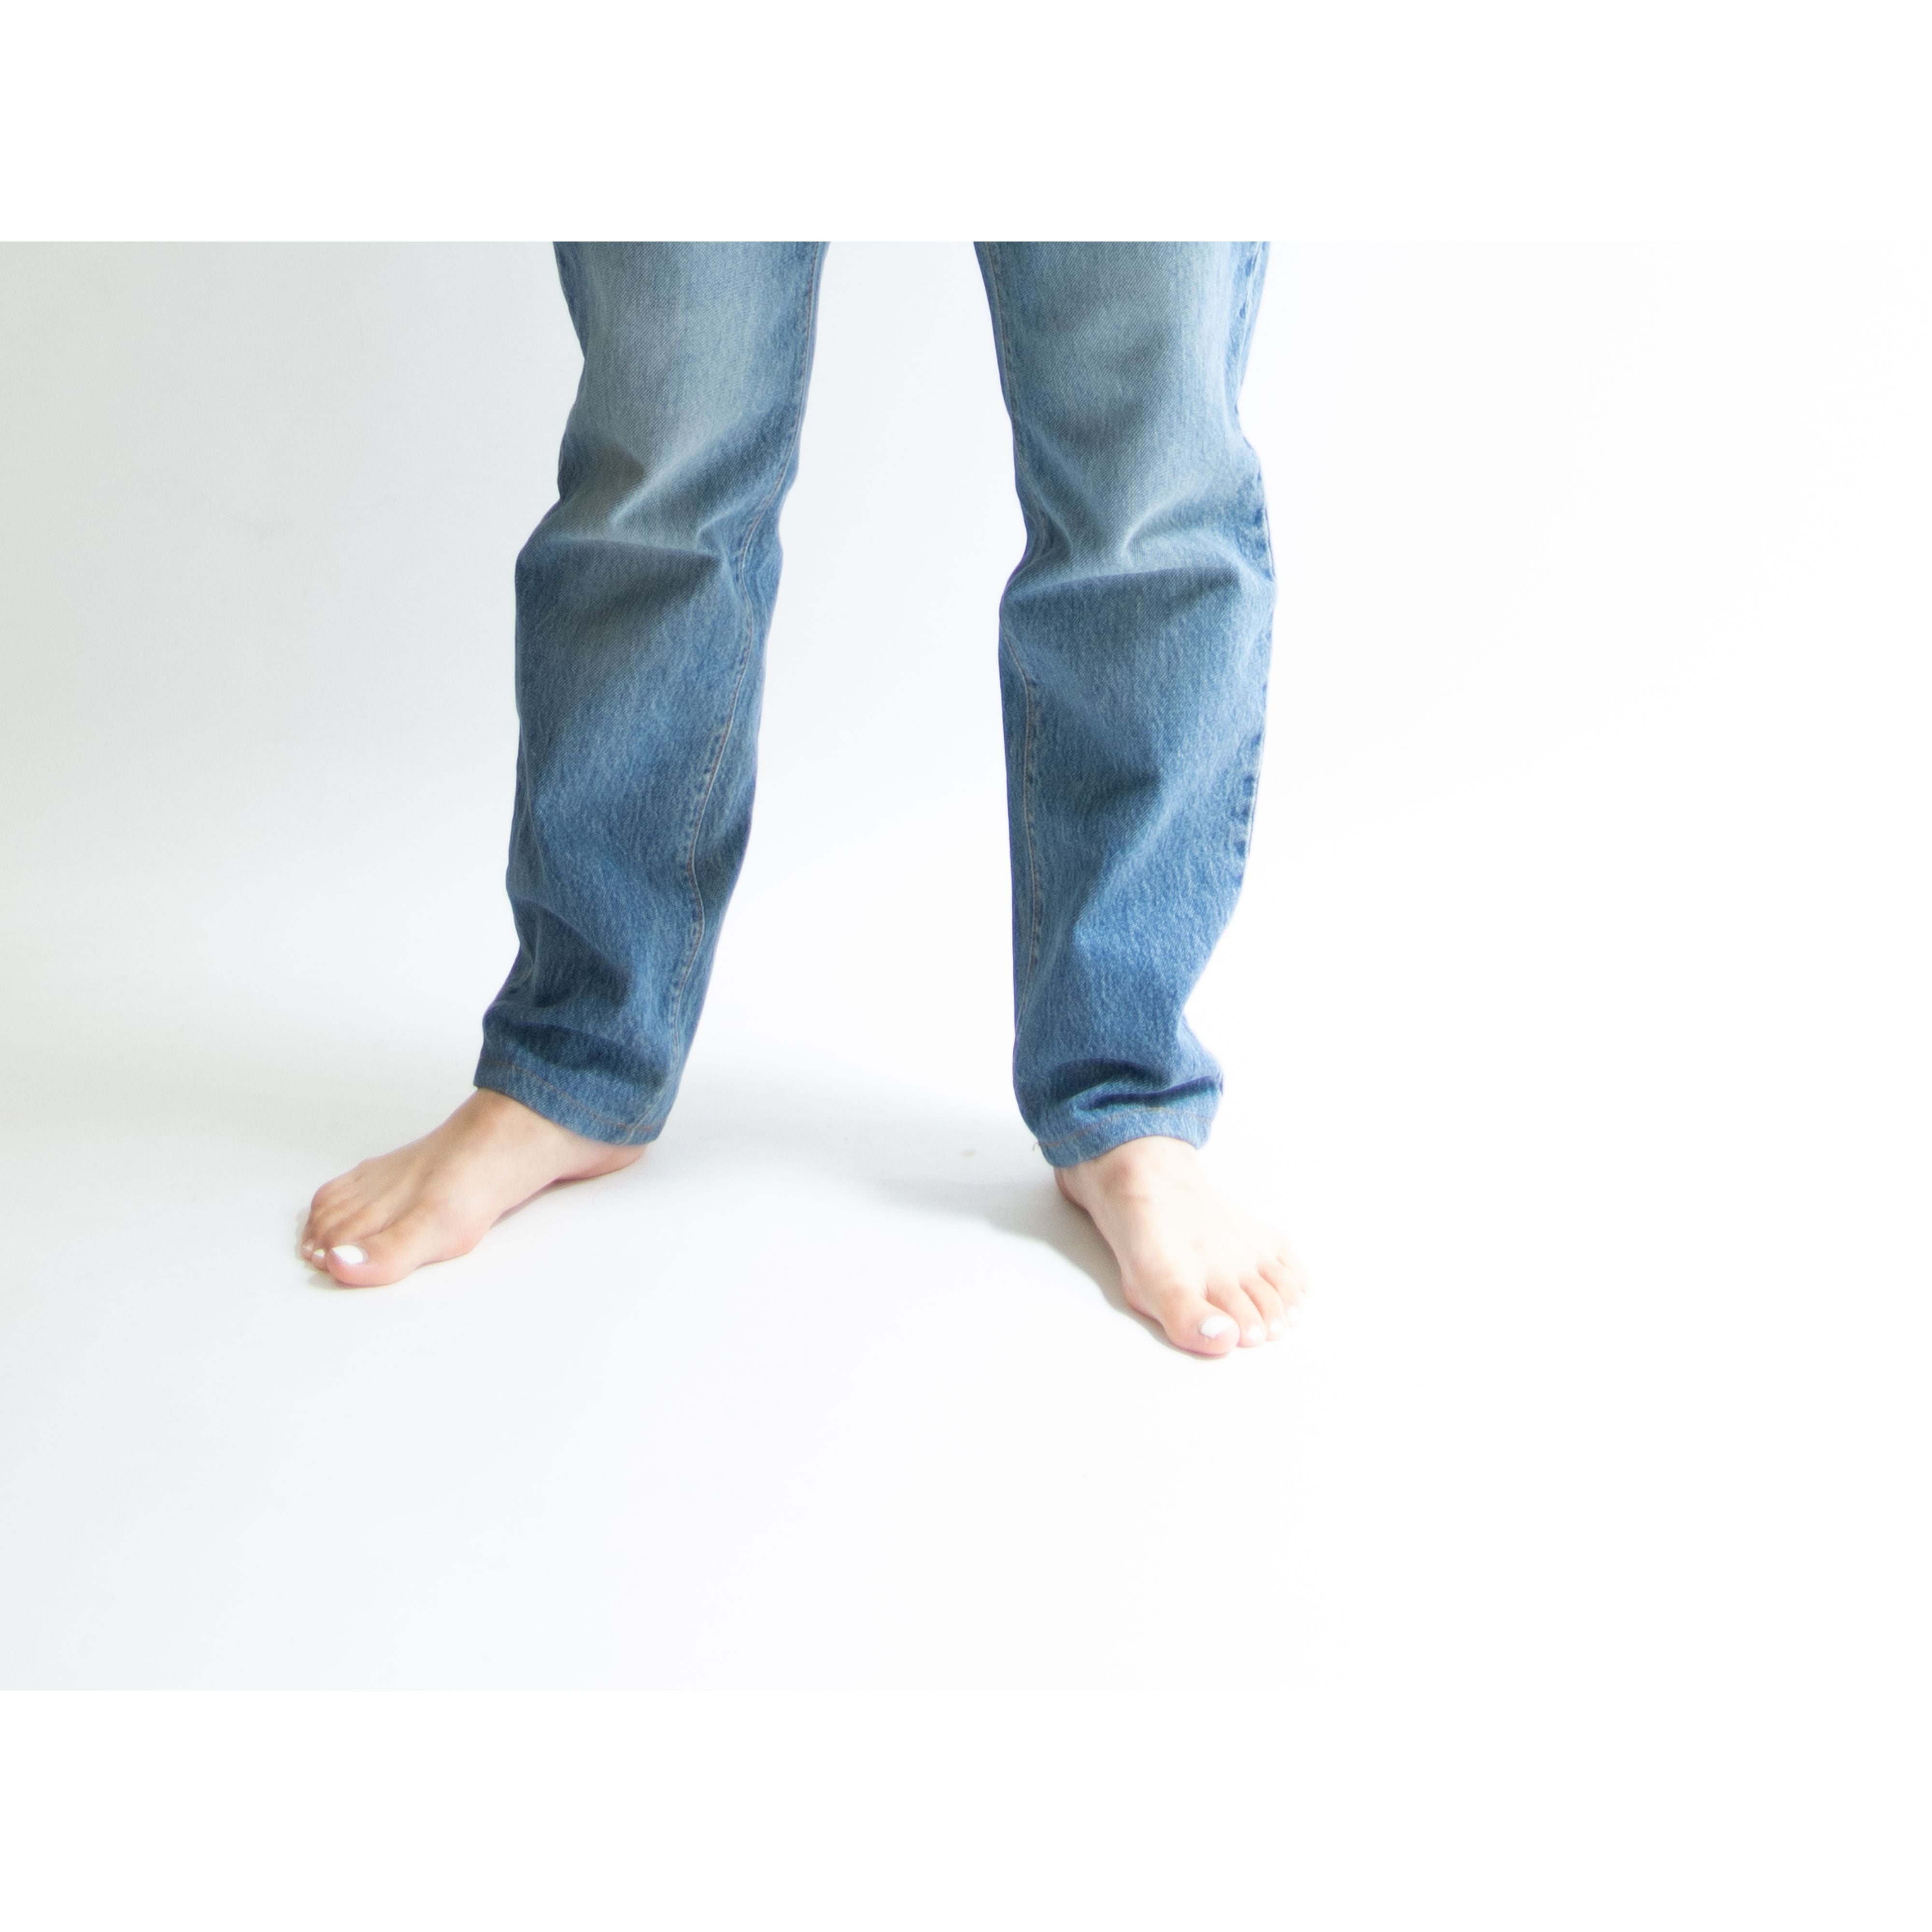 【LEVI'S 901 FOR WOMEN】Made in U.S.A. tapered denim pants W28 L32（リーバイス アメリカ製テーパードデニムパンツ ジーンズ）12a